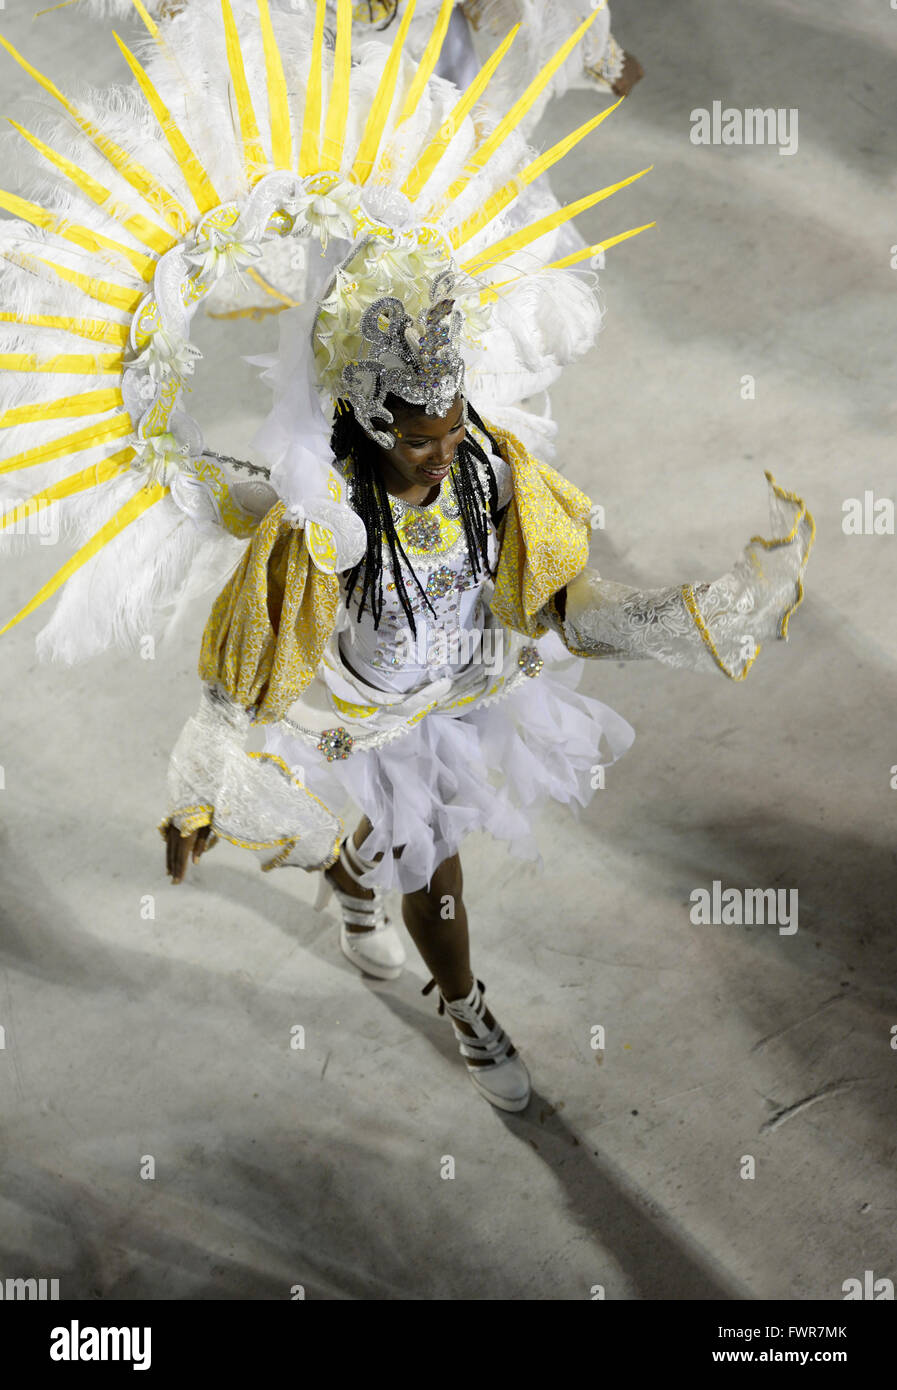 Défilé en costume danseuse de samba, de l'école de samba Estacio de Sá, carnaval 2016 dans le Sambadrome, Rio de Janeiro, Brésil Banque D'Images